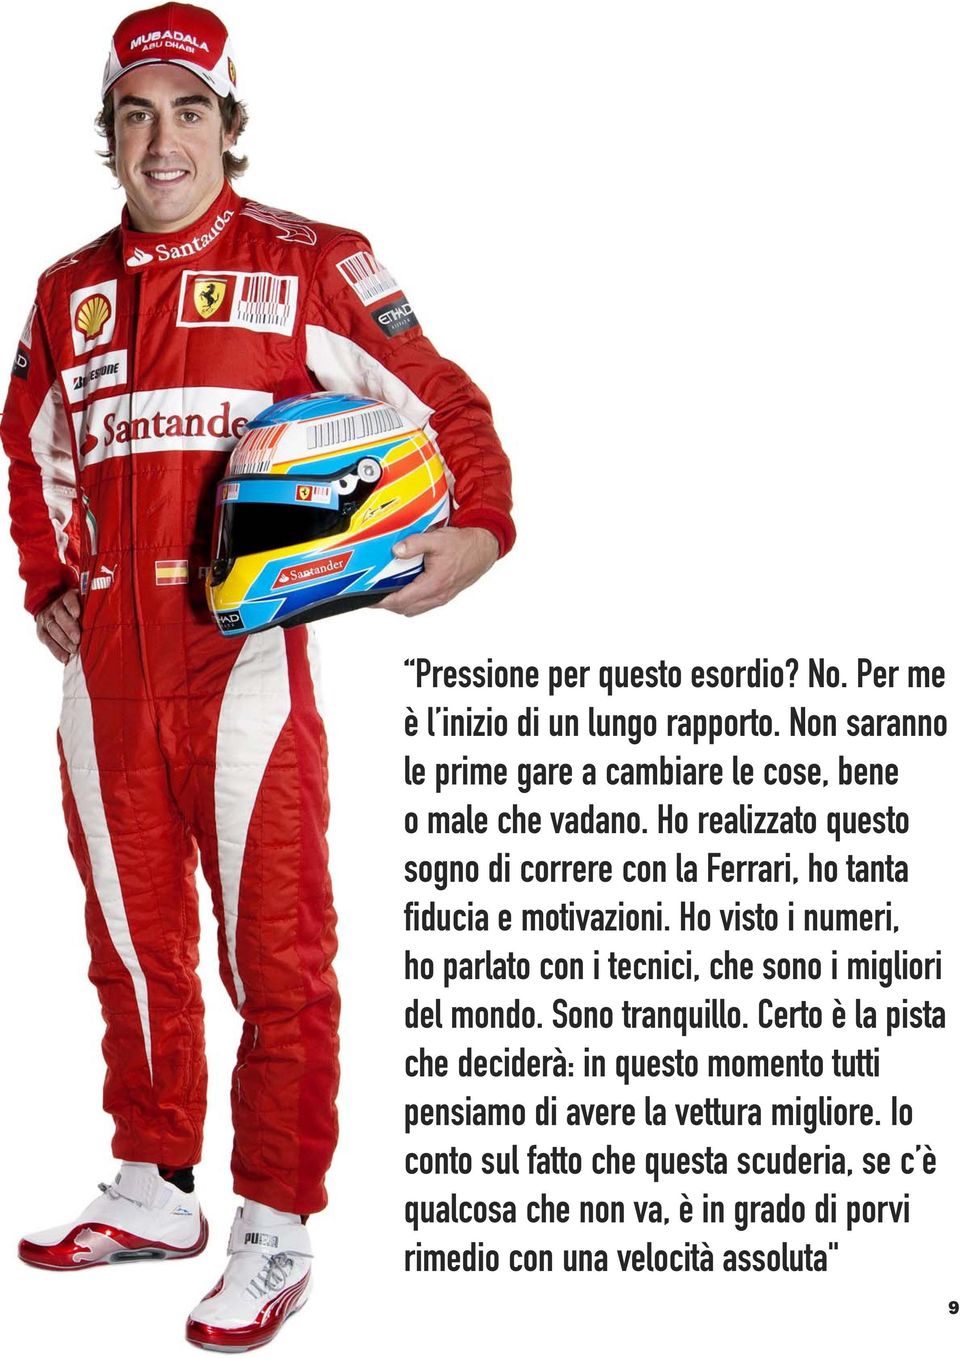 Ho realizzato questo sogno di correre con la Ferrari, ho tanta fiducia e motivazioni.